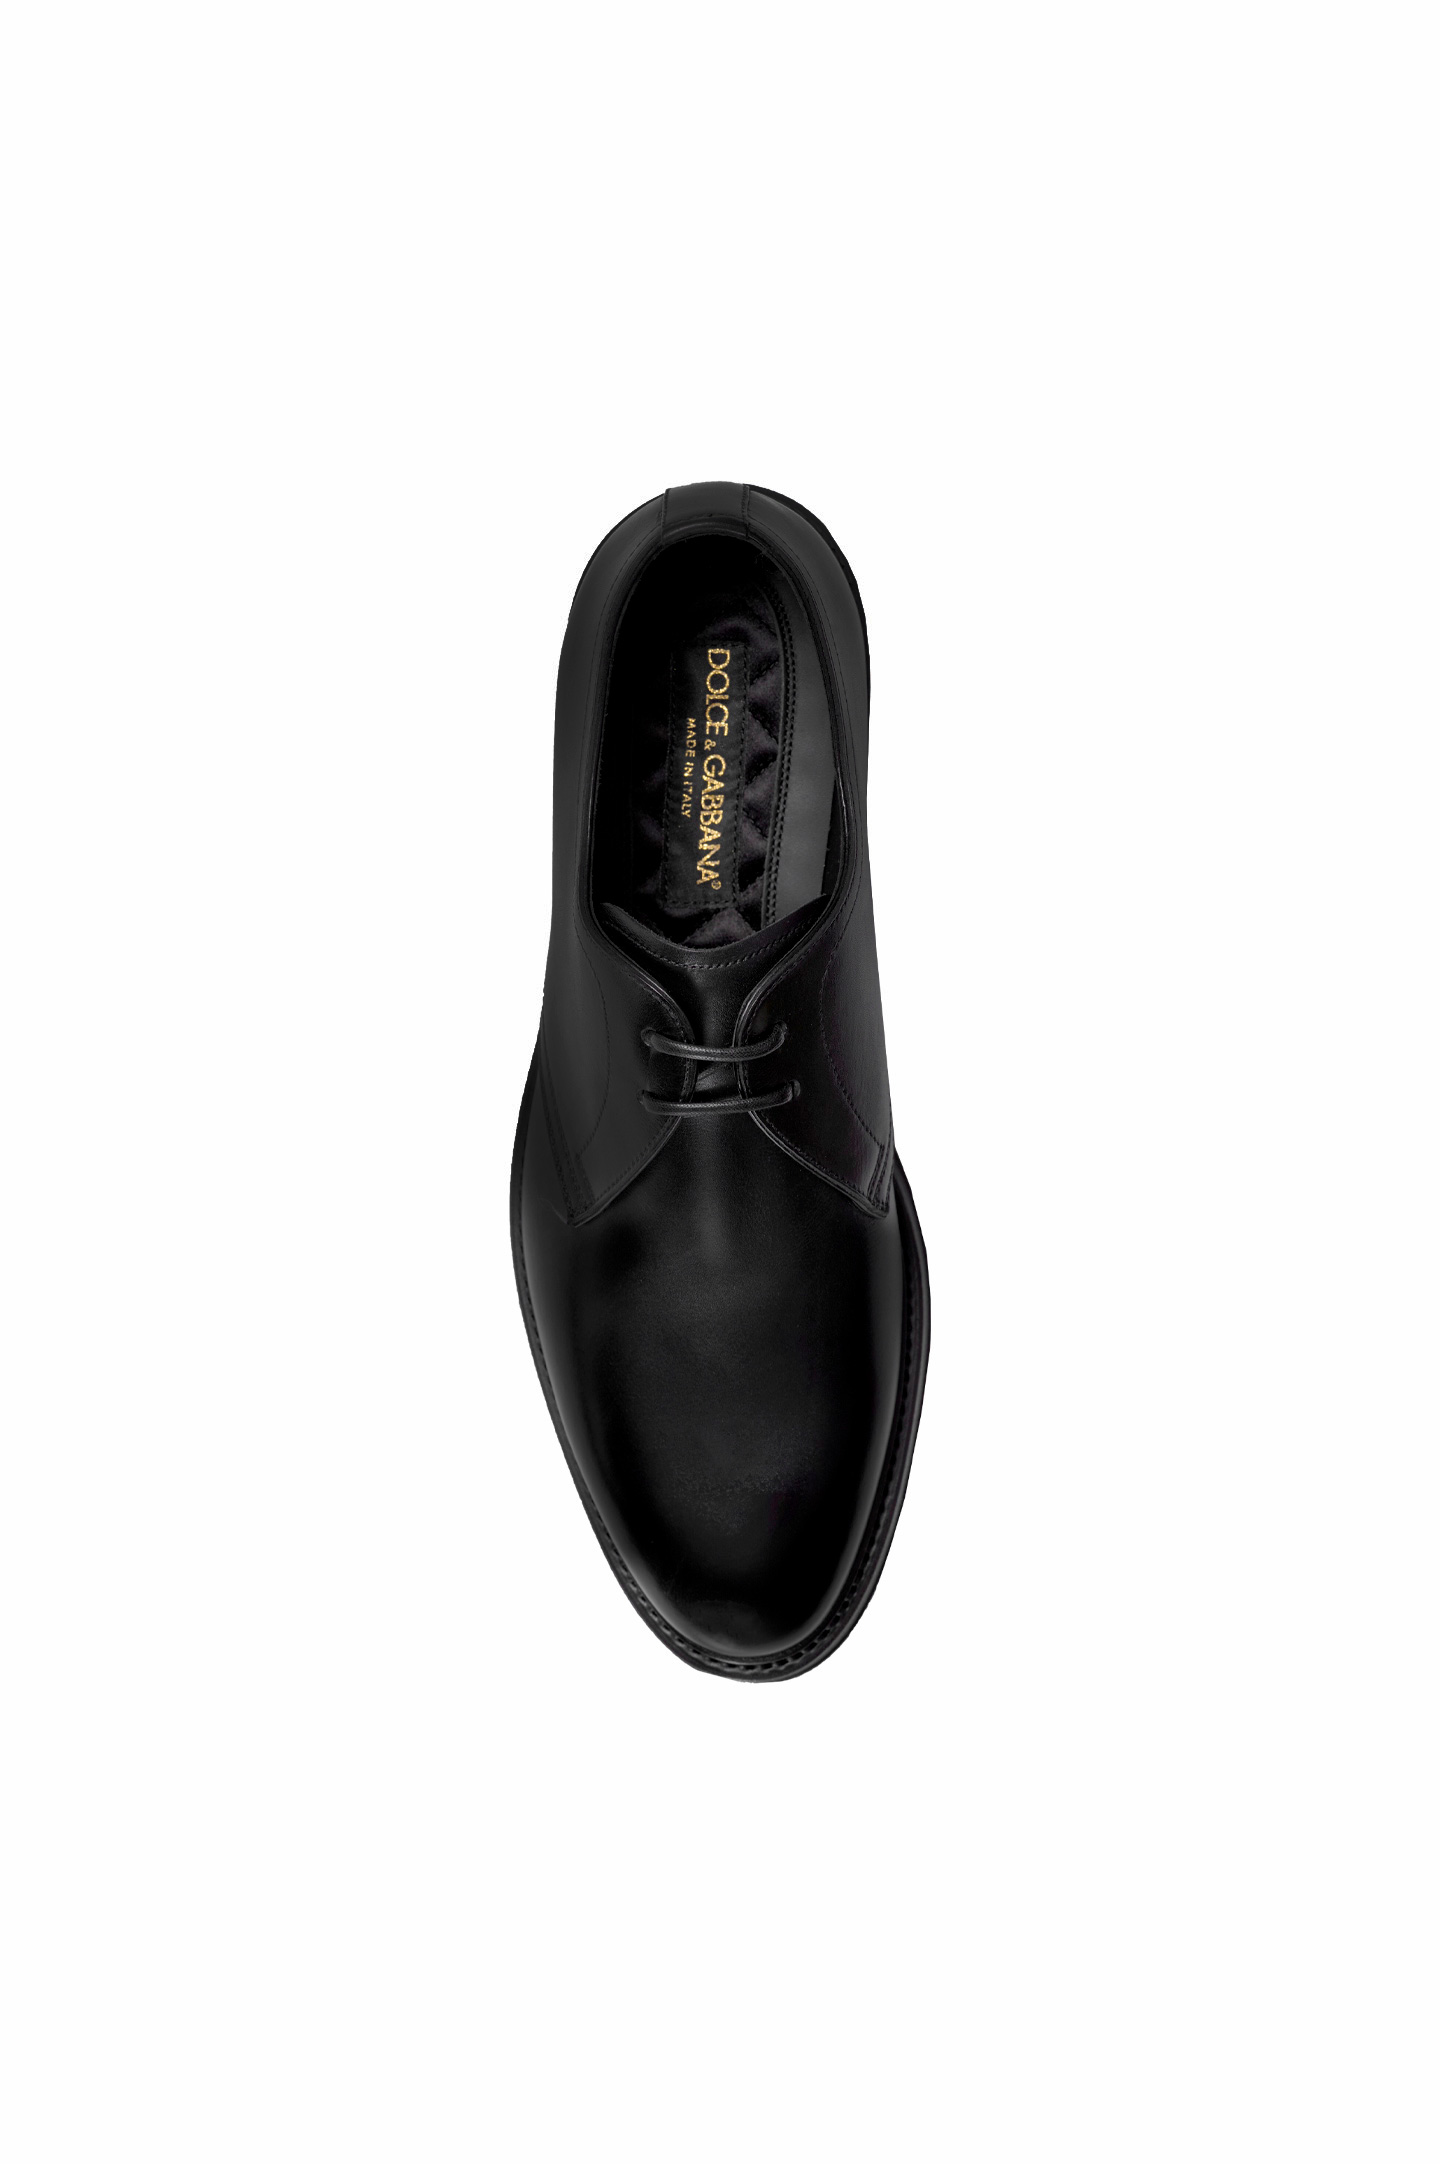 Туфли DOLCE & GABBANA A10646 AX038, цвет: Черный, Мужской